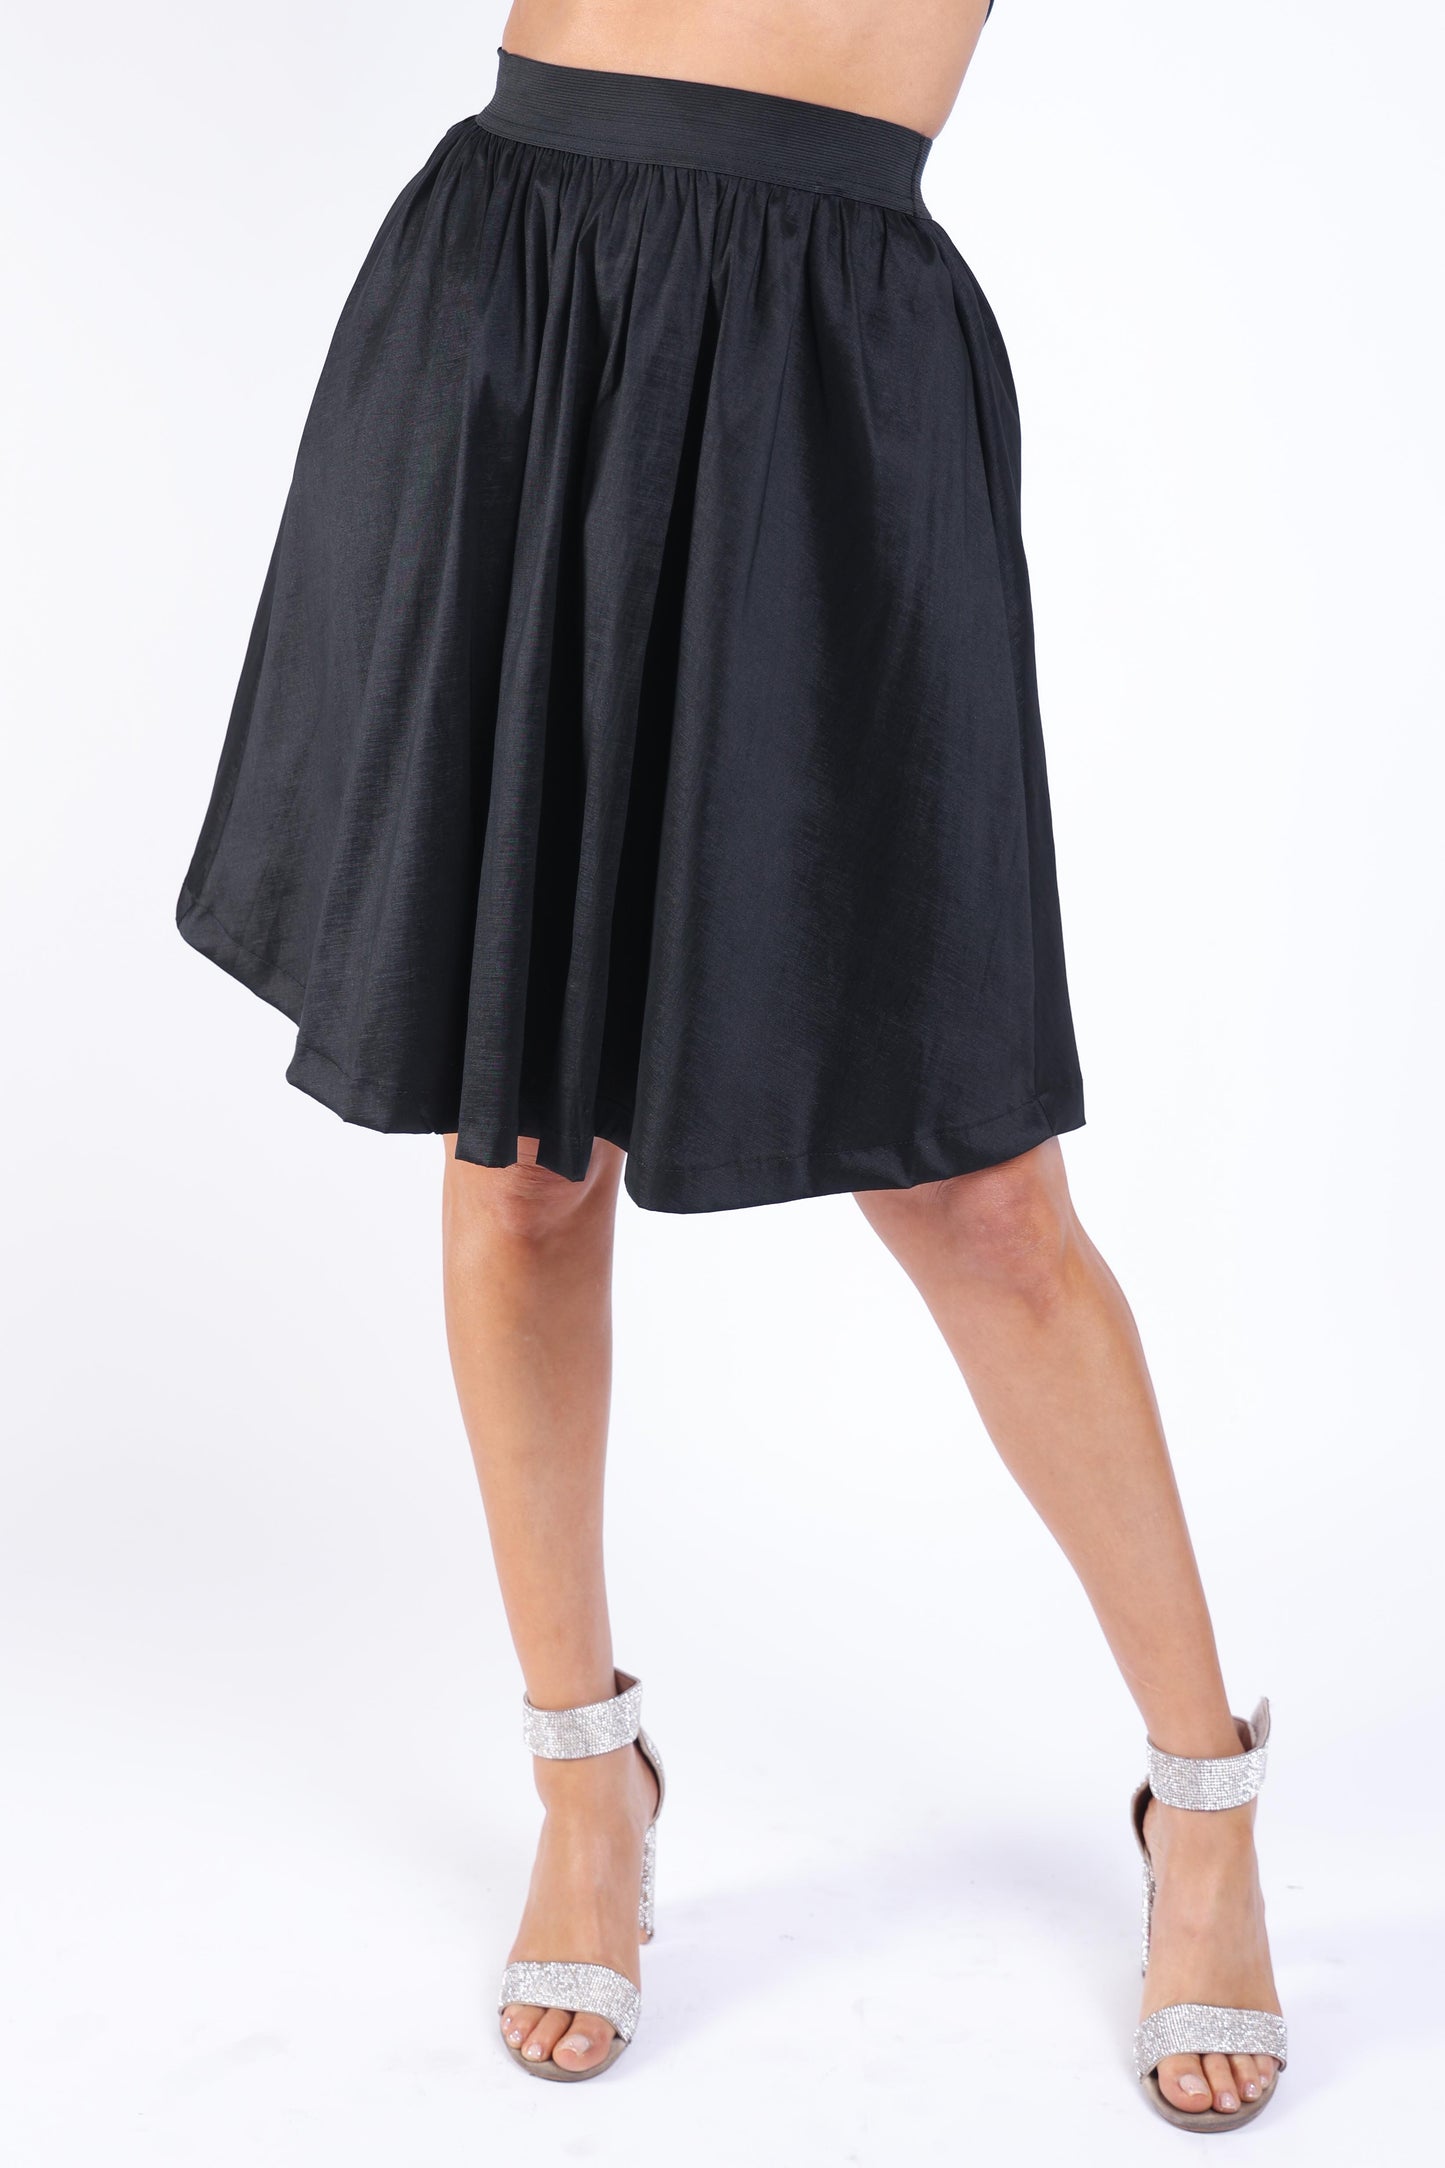 Casual Elastic High Waist Pleated Midi Flare Black Skirt